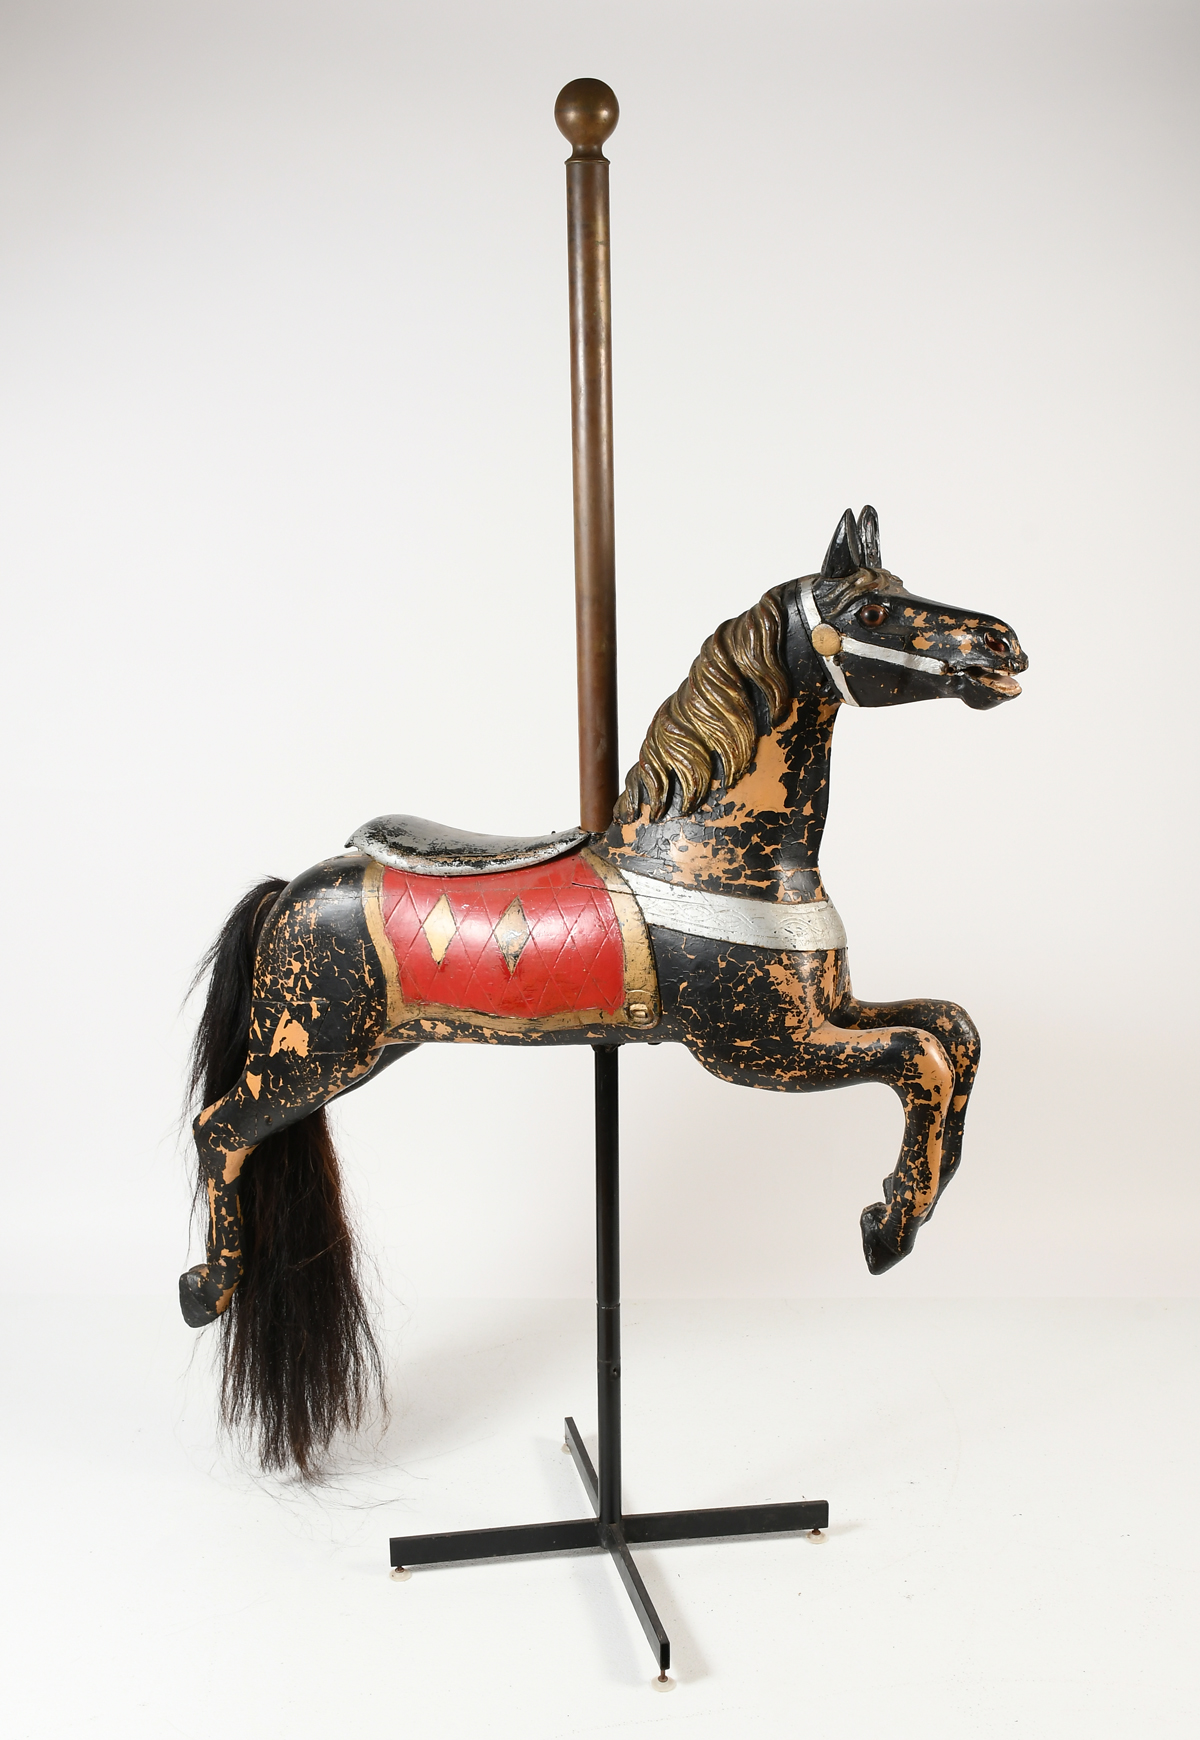 SPILLMAN OR DARE CAROUSEL HORSE: